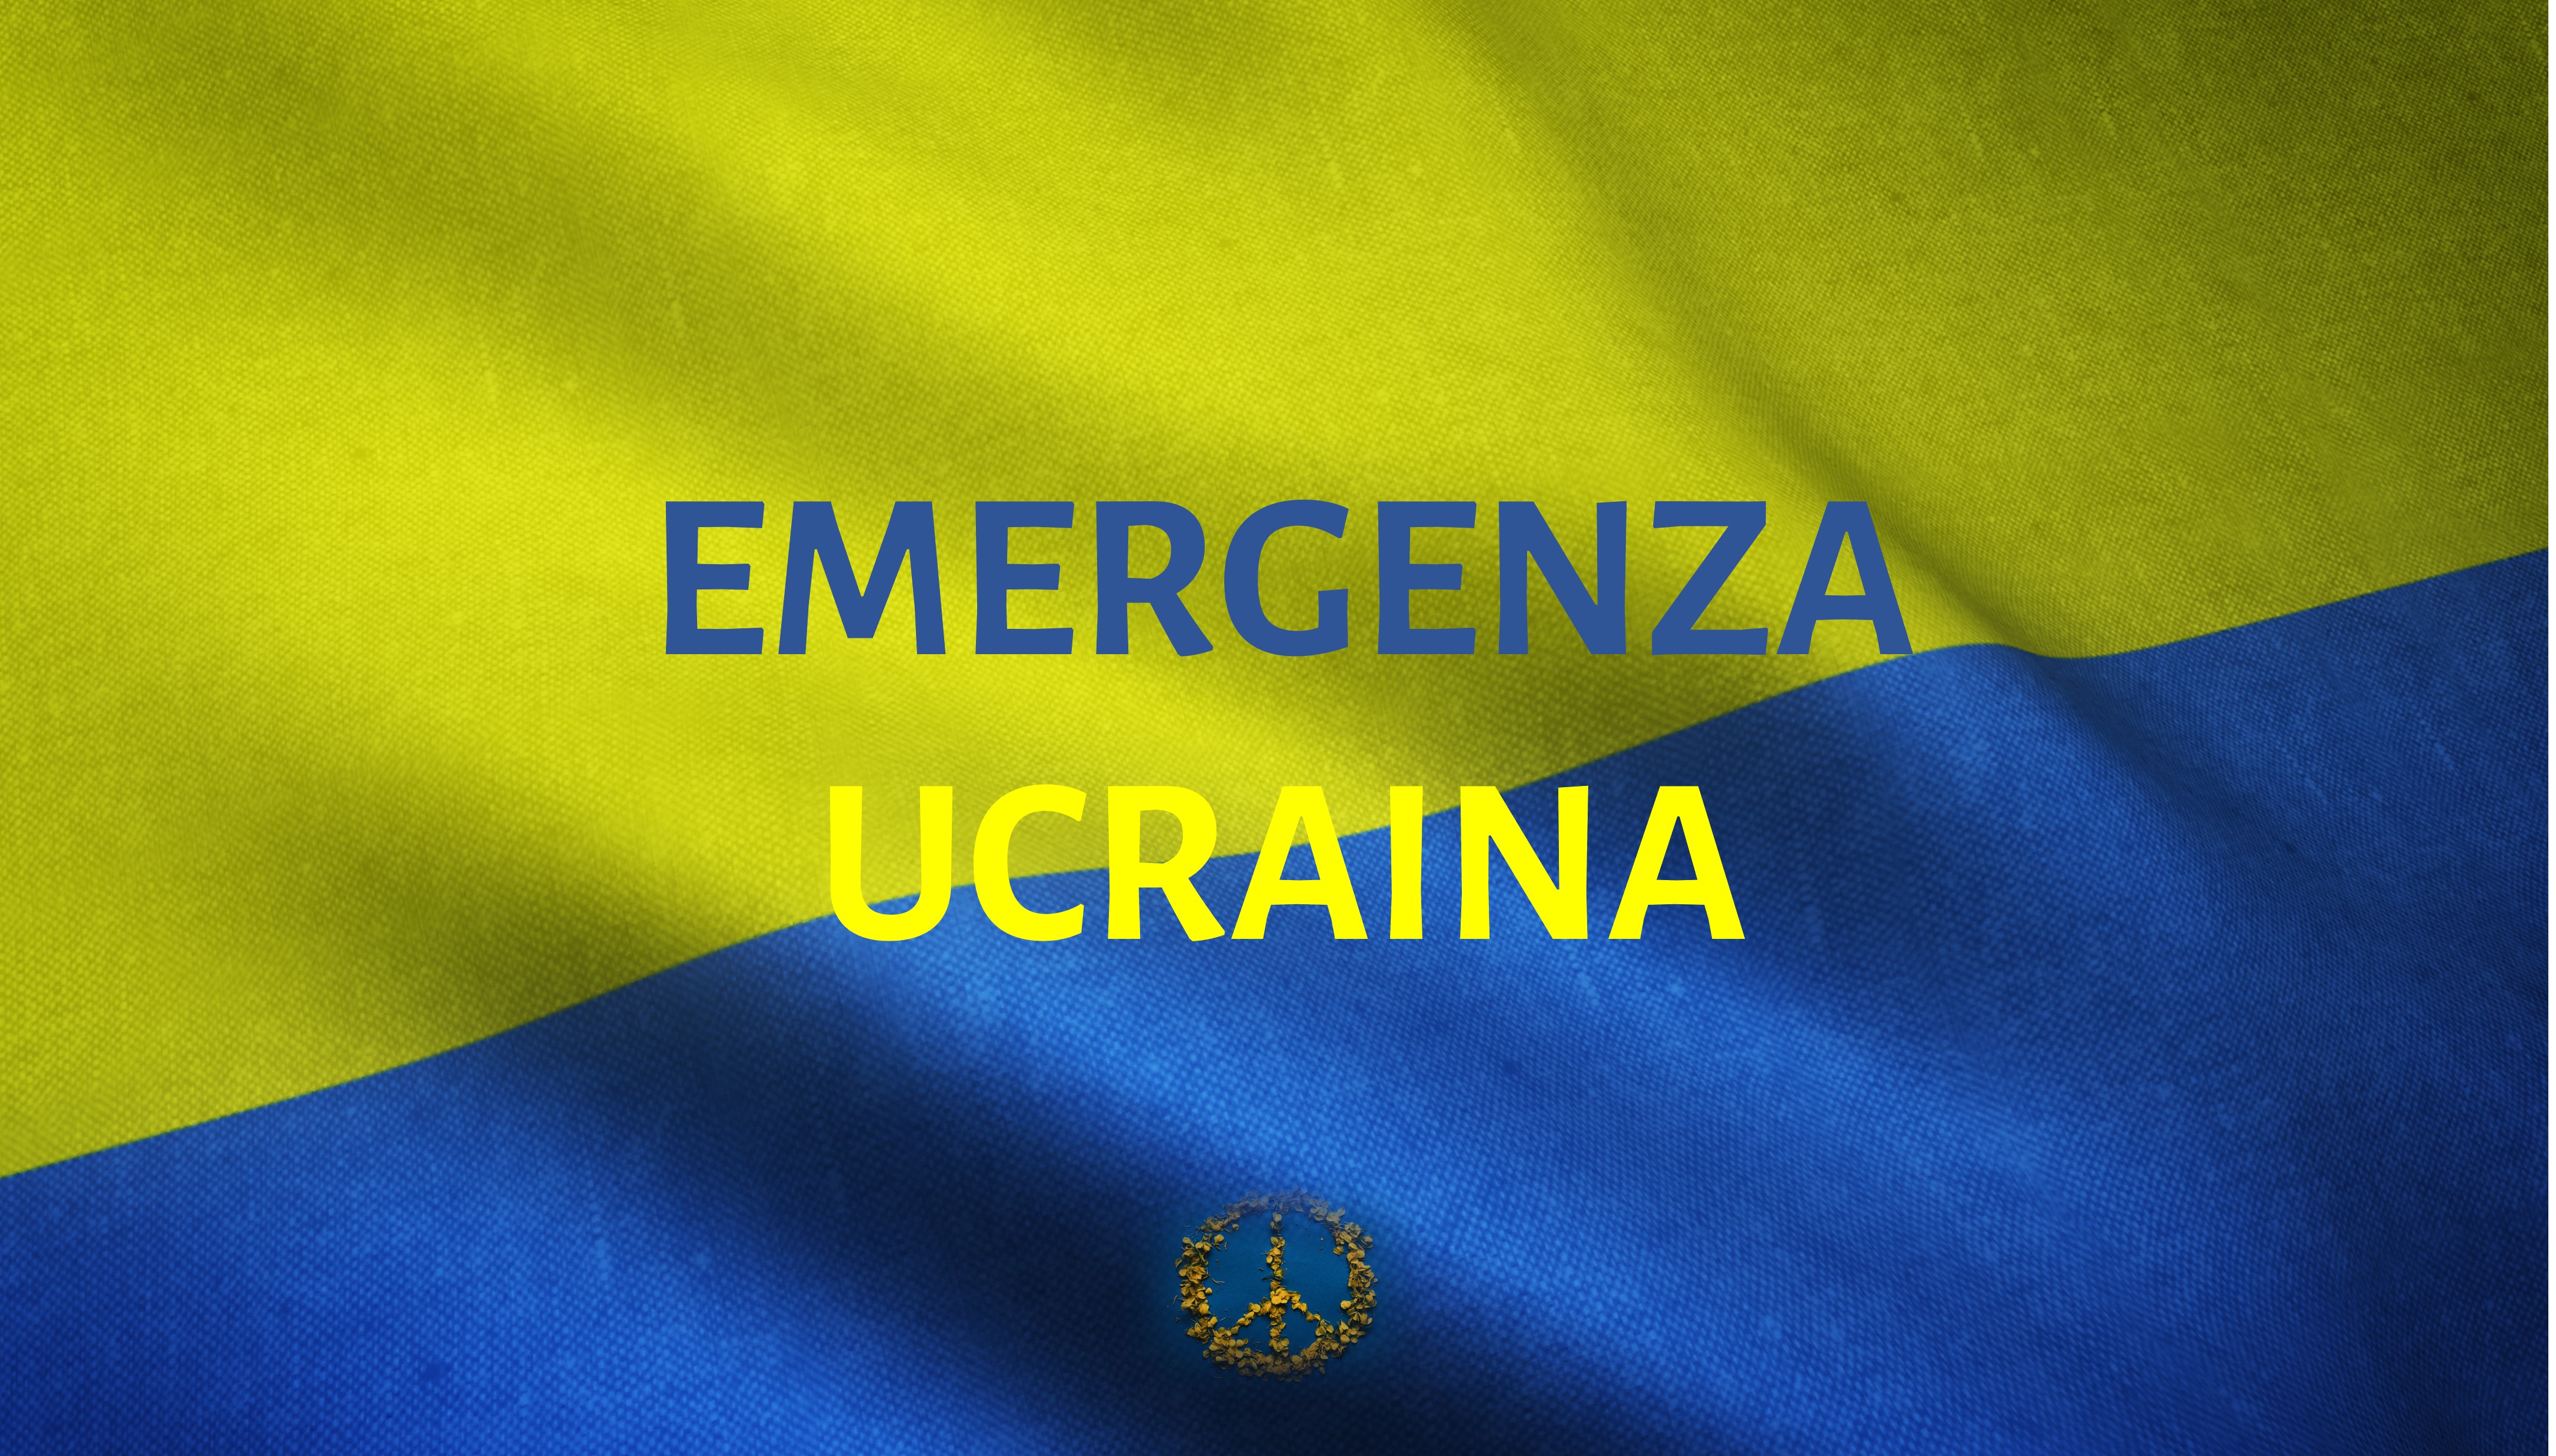 Emergenza Ucraina-Cascina Biblioteca